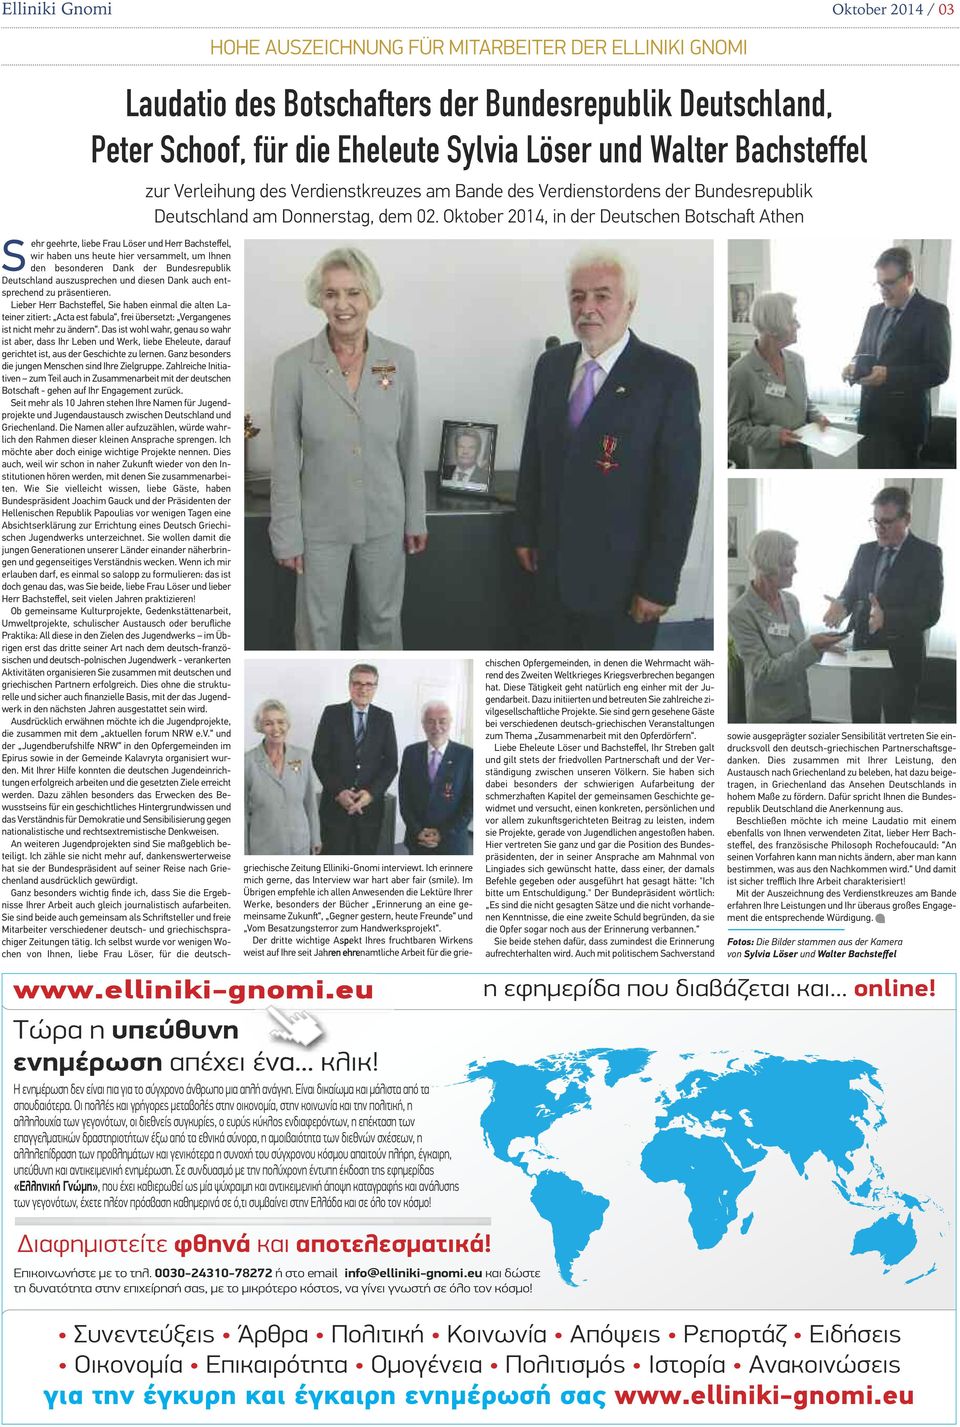 Oktober 2014, in der Deutschen Botschaſt Athen Sehr geehrte, liebe Frau Löser und Herr Bachsteffel, wir haben uns heute hier versammelt, um Ihnen den besonderen Dank der Bundesrepublik Deutschland